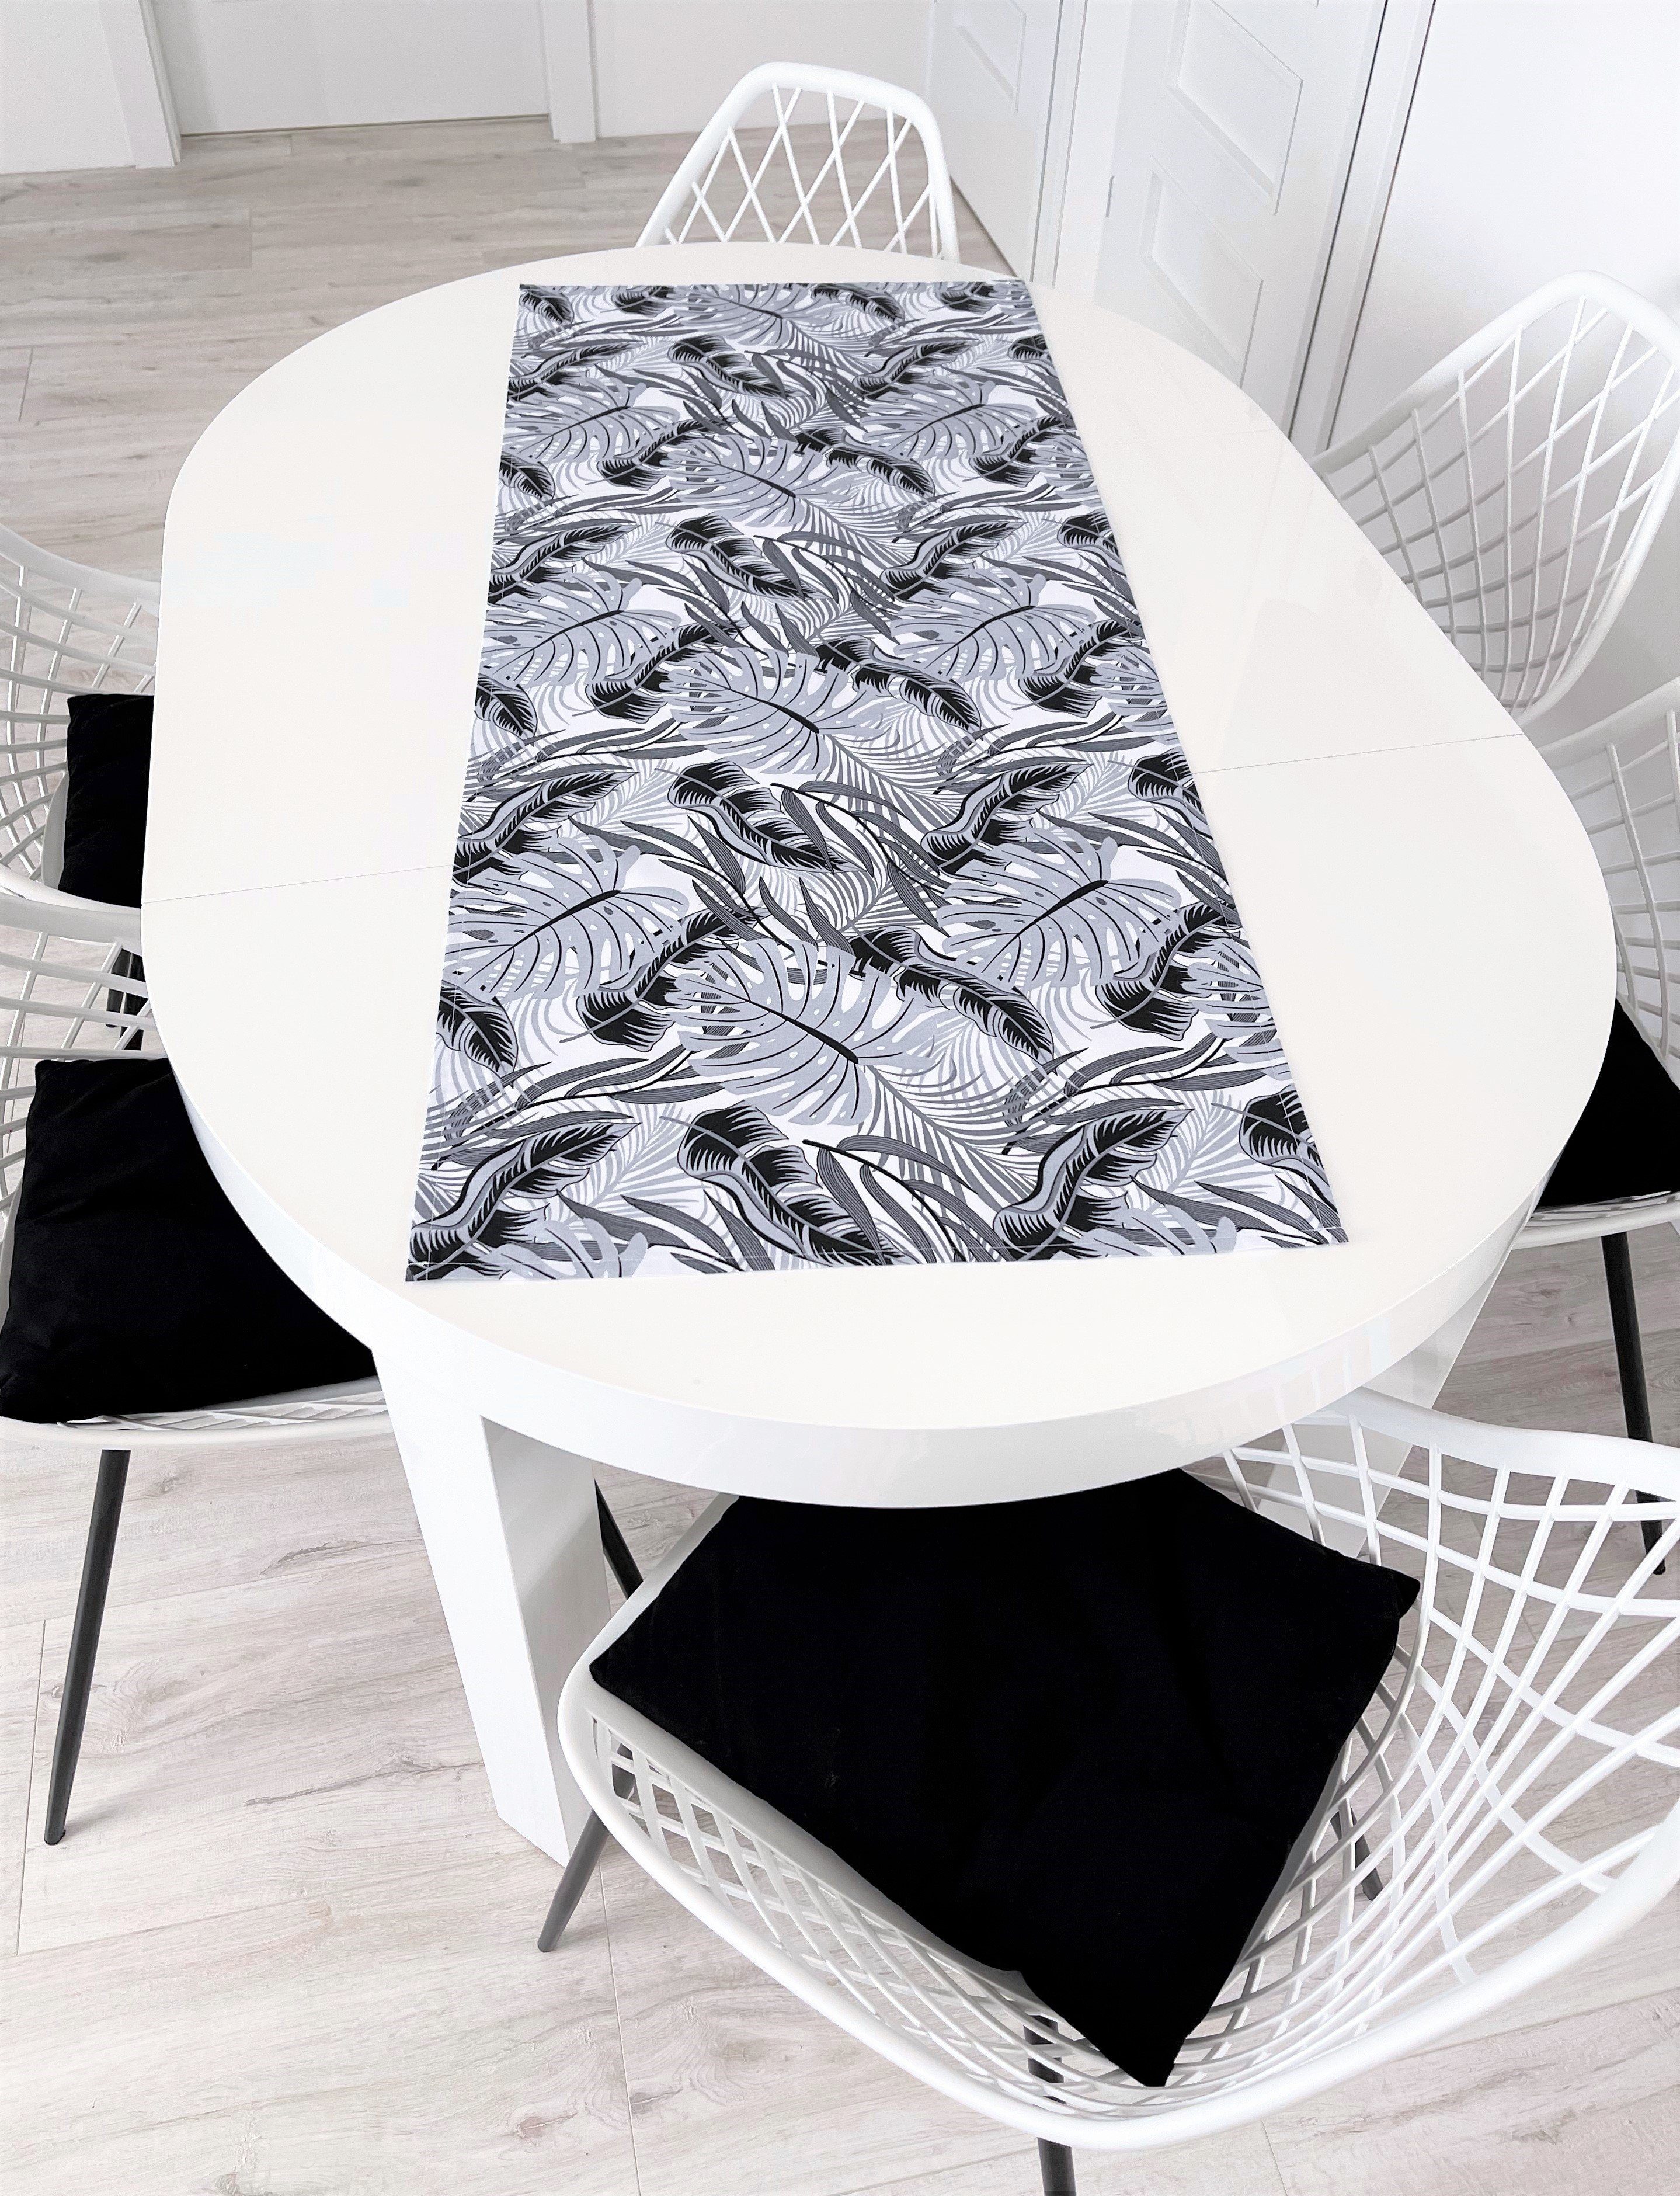 RoKo-Textilien Tischläufer Tischläufer Tischdecke Tischlaeufer 100%  Baumwolle gedeckter Tisch in 18 Maßen verfügbar, Farben: Weiß, Grau, Schwarz